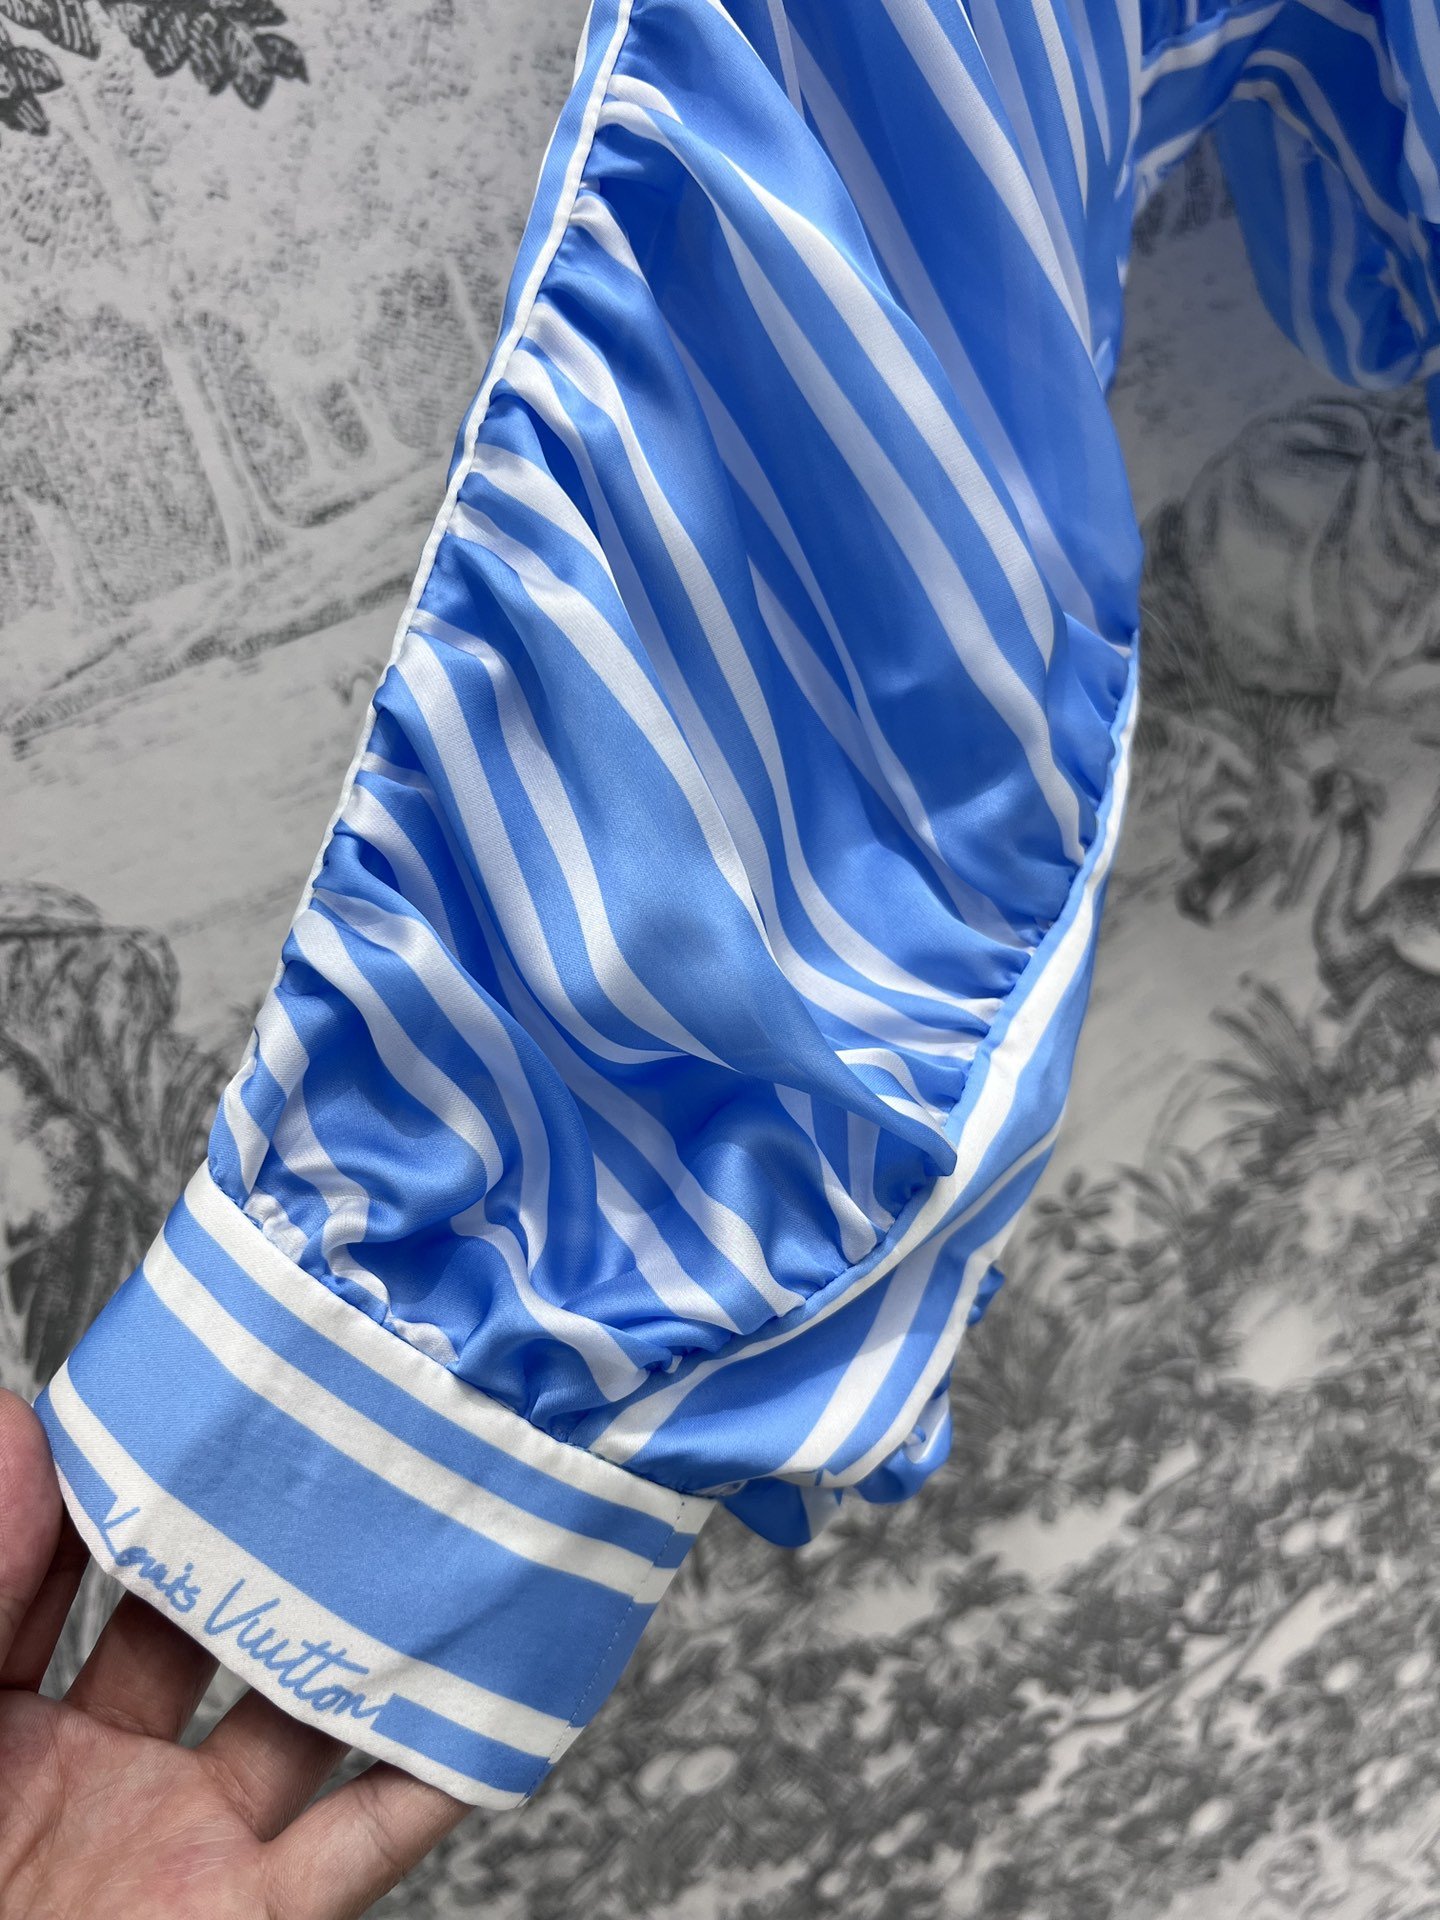 L家24春夏秀款系列双条纹束褶衬衫整件采用垂坠束褶设计非常讲究做工可立领可翻领的落肩款版型勾勒出精致流丽